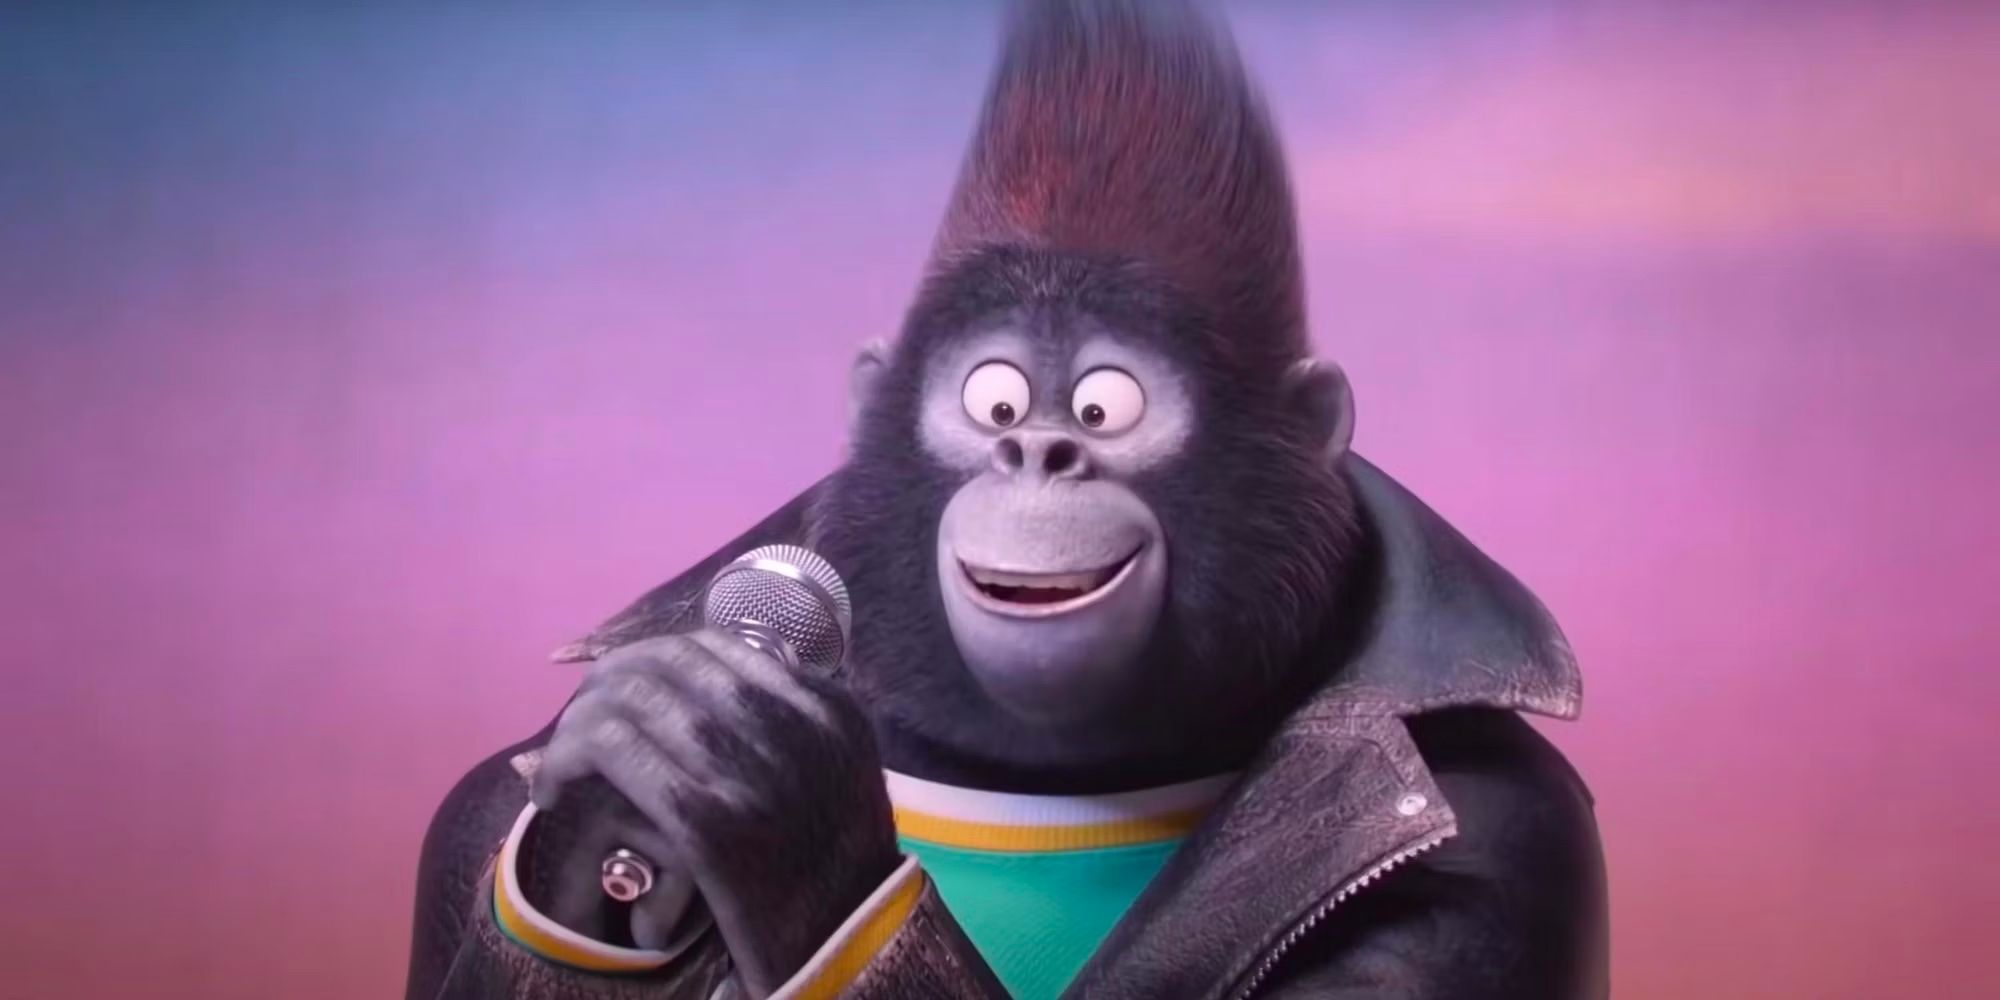 Taron Egerton as Johnny the Gorilla in Sing